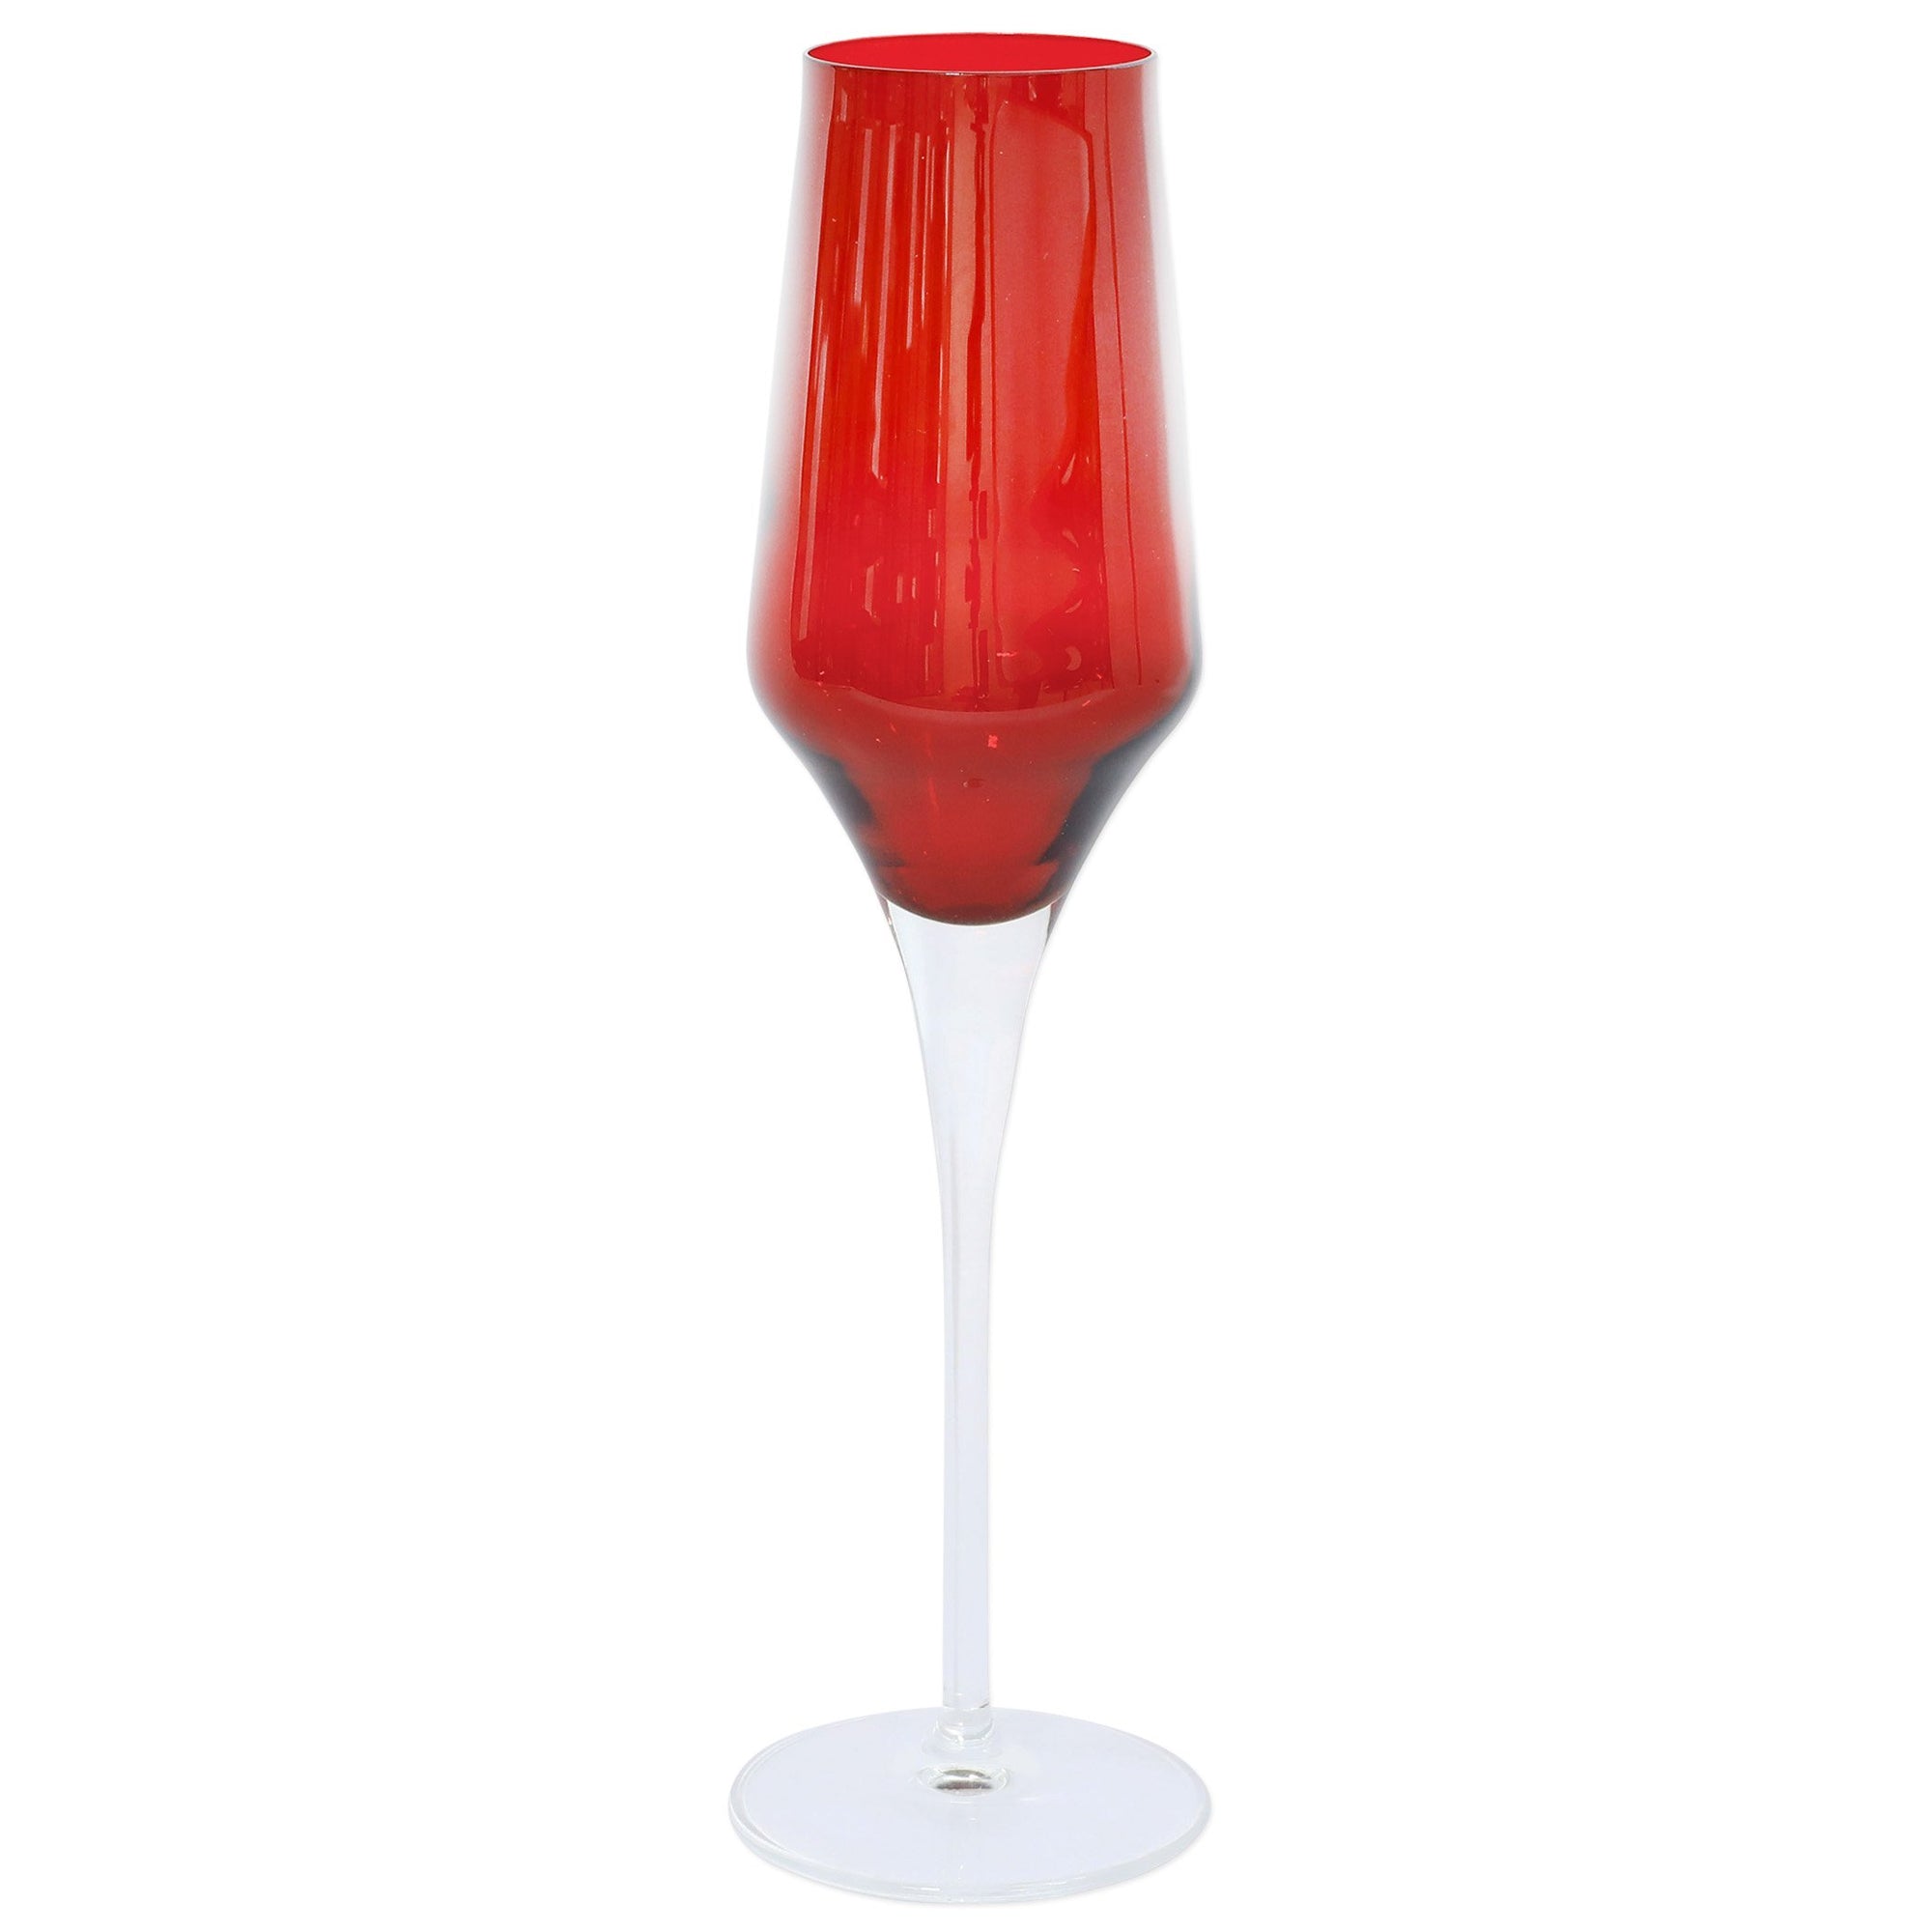 VIETRI: Contessa Red Champagne Glass - Artistica.com